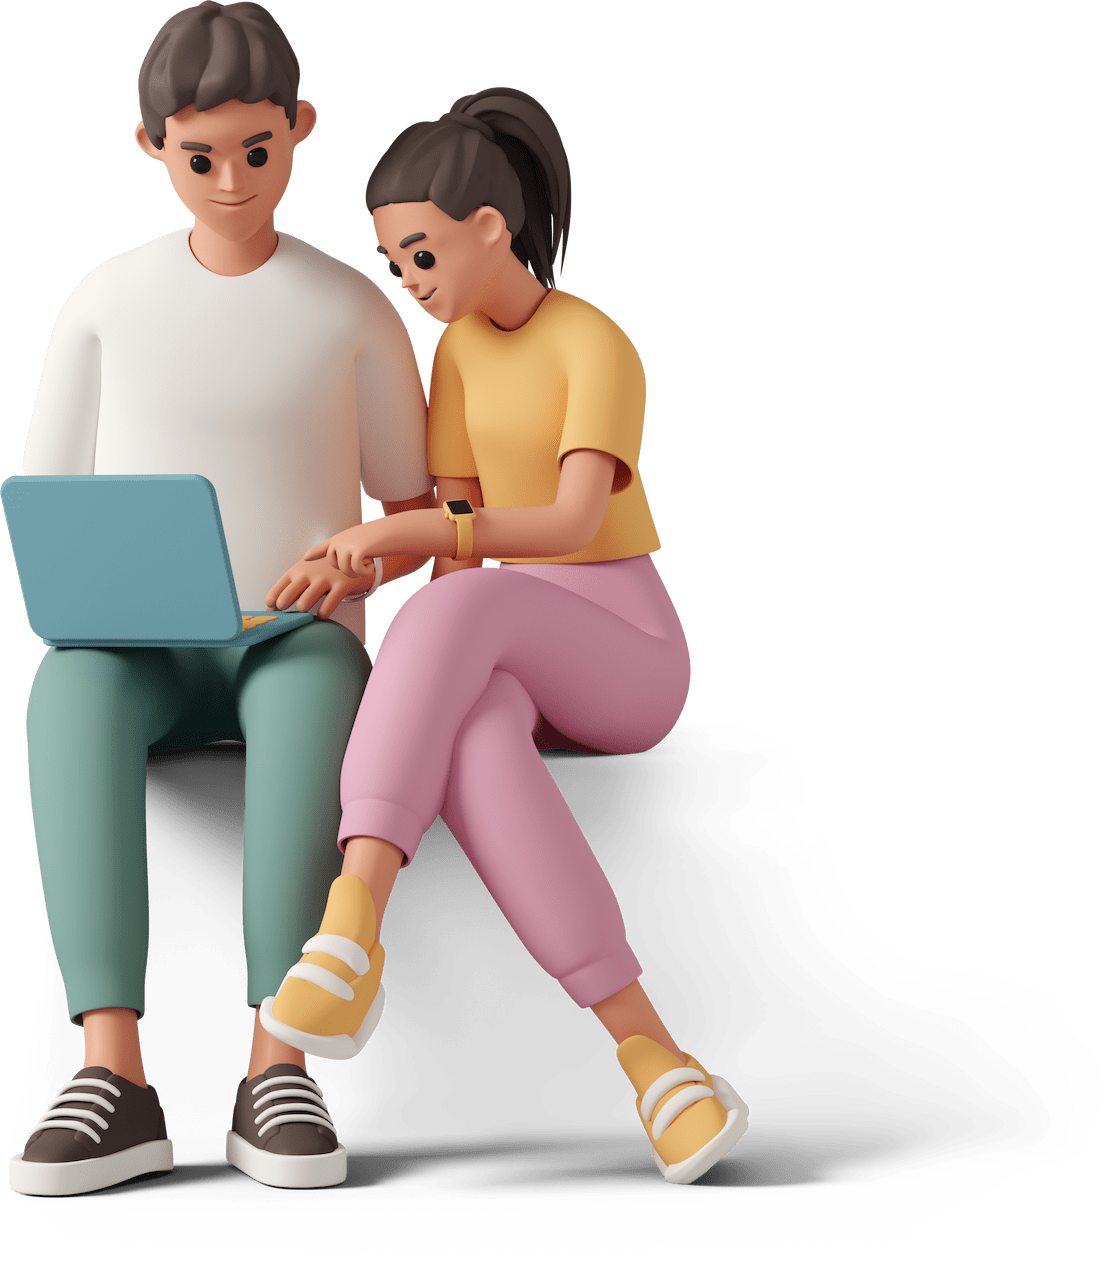 Ilustracja 3D, na której znajdują się dwie postacie mężczyzna i kobieta. Siedzą obok siebie, mężczyzna trzyma komputer na kolanach a kobieta patrzy na monitor i coś wskazuje.